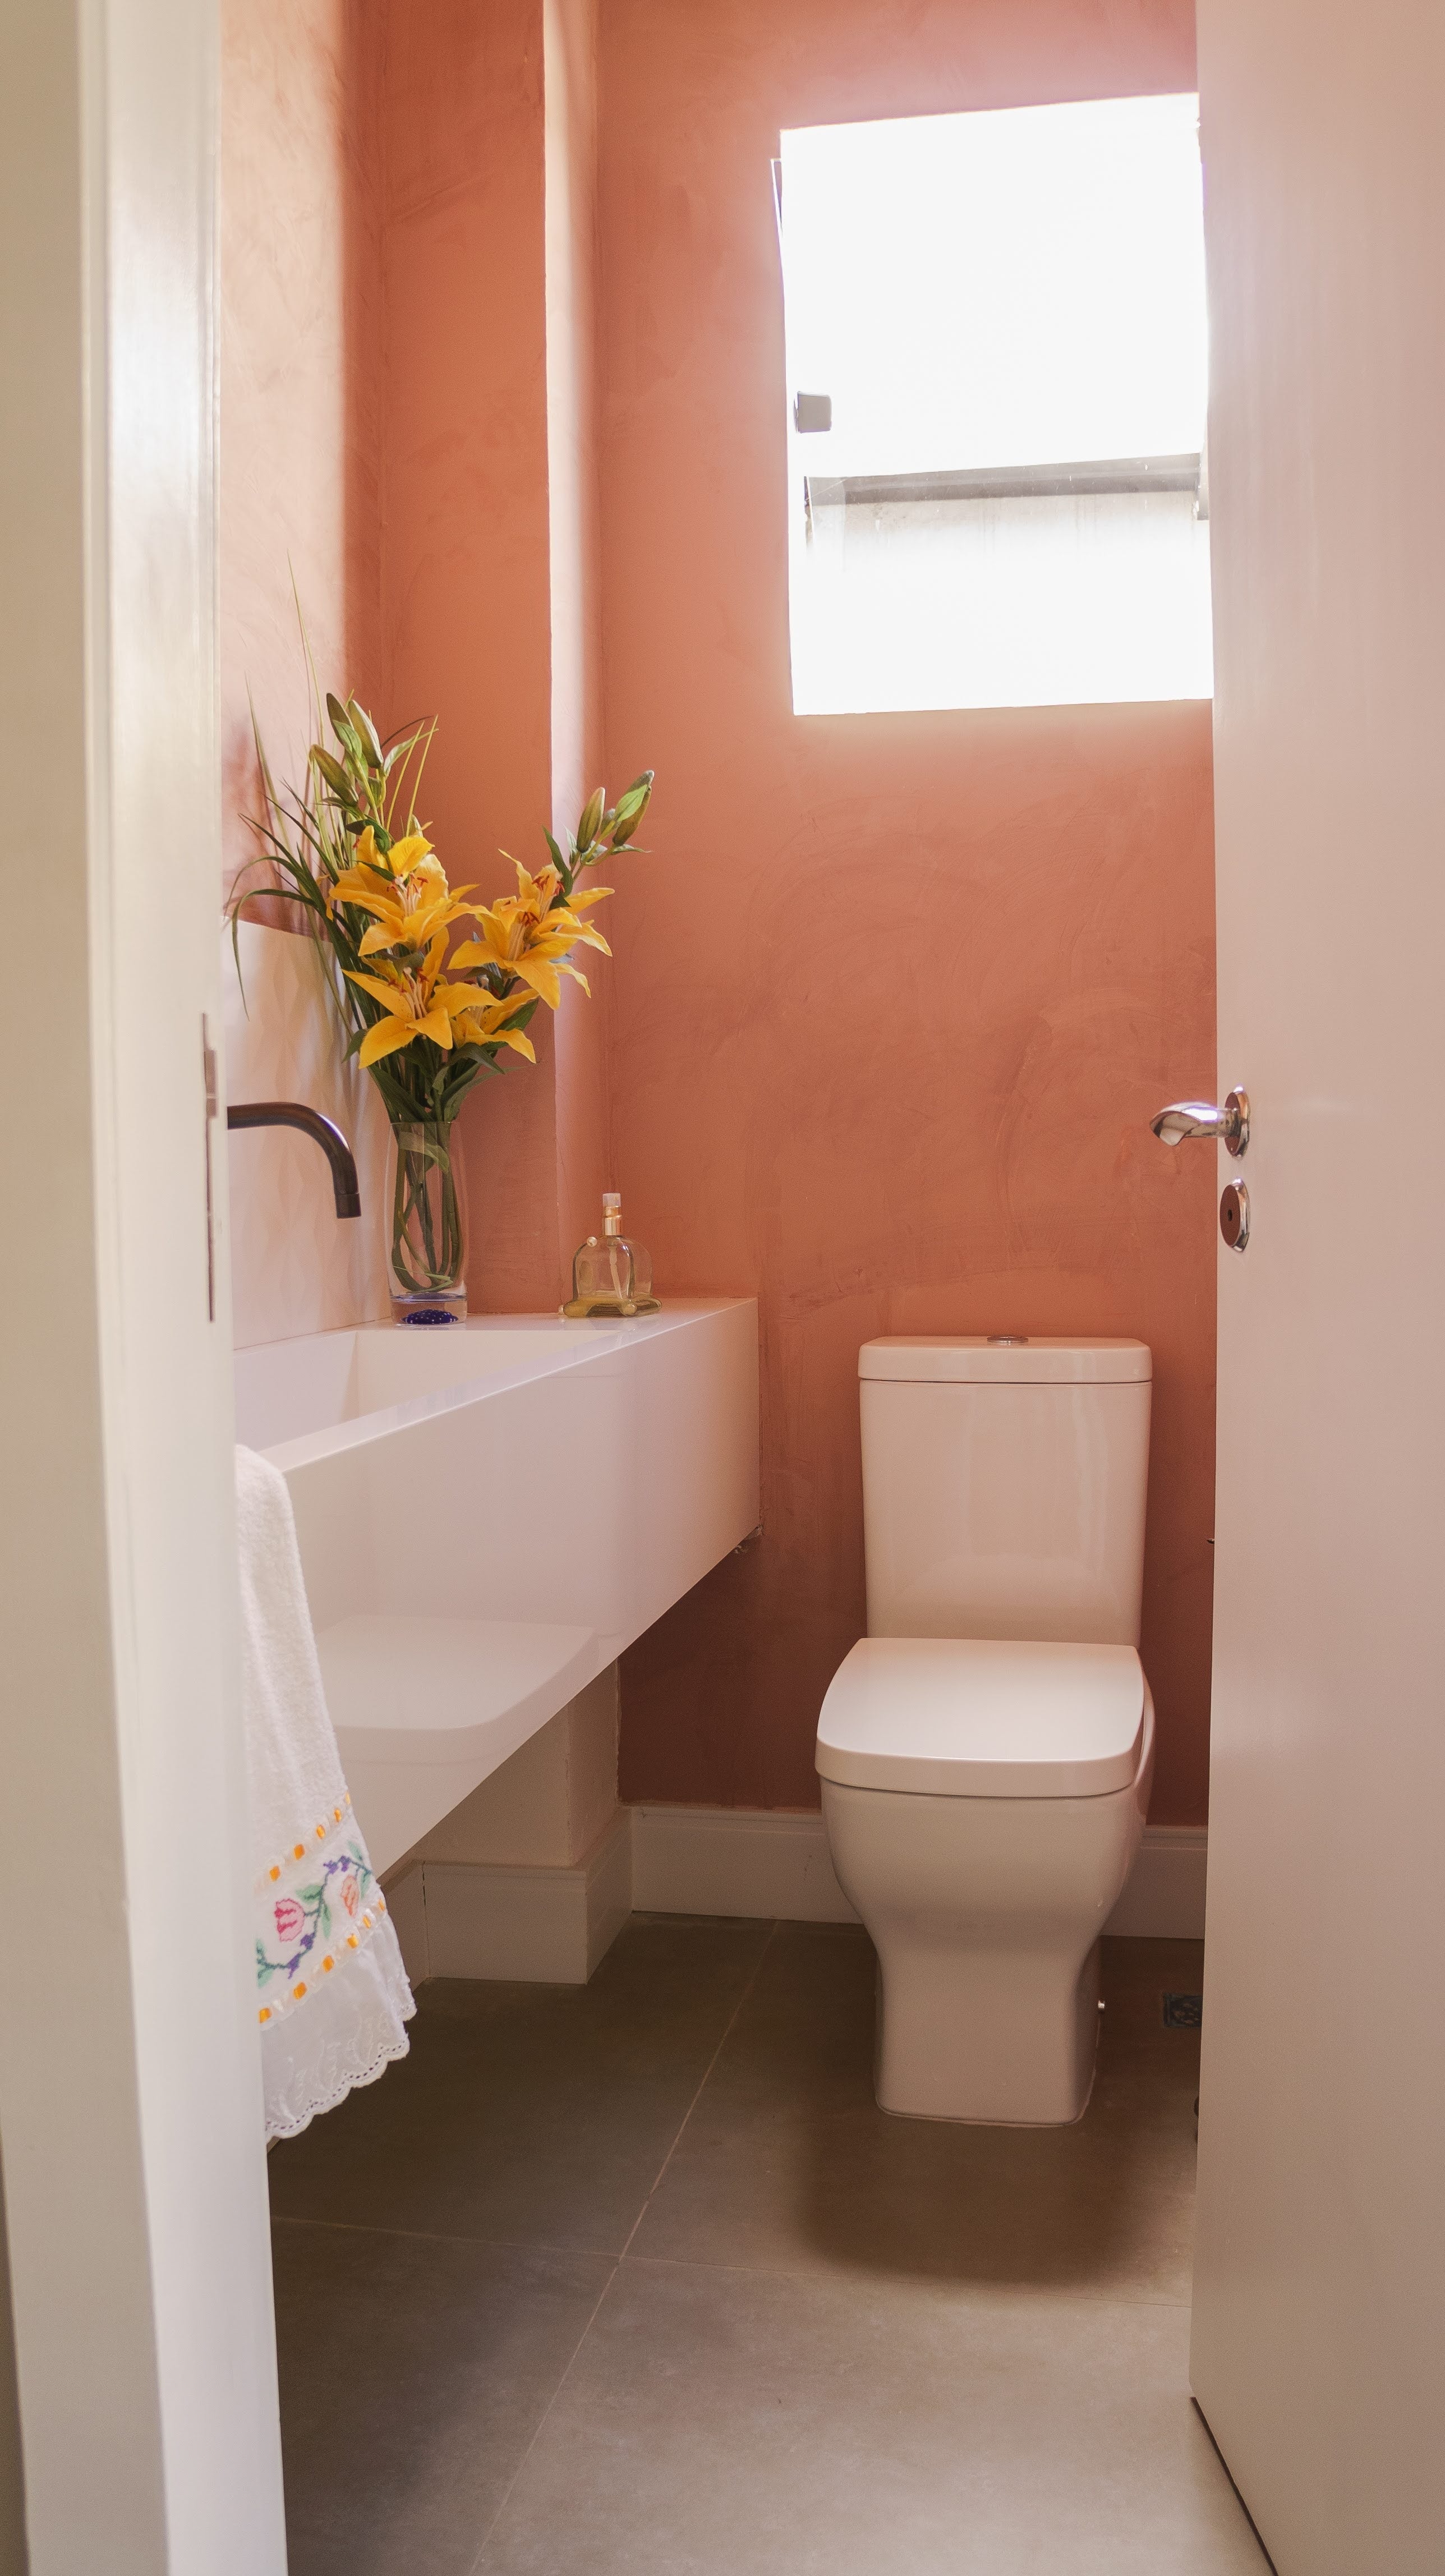 5 idées pour décorer ses toilettes - JHANA - Ré-enchantez vos toilettes –  Jhana